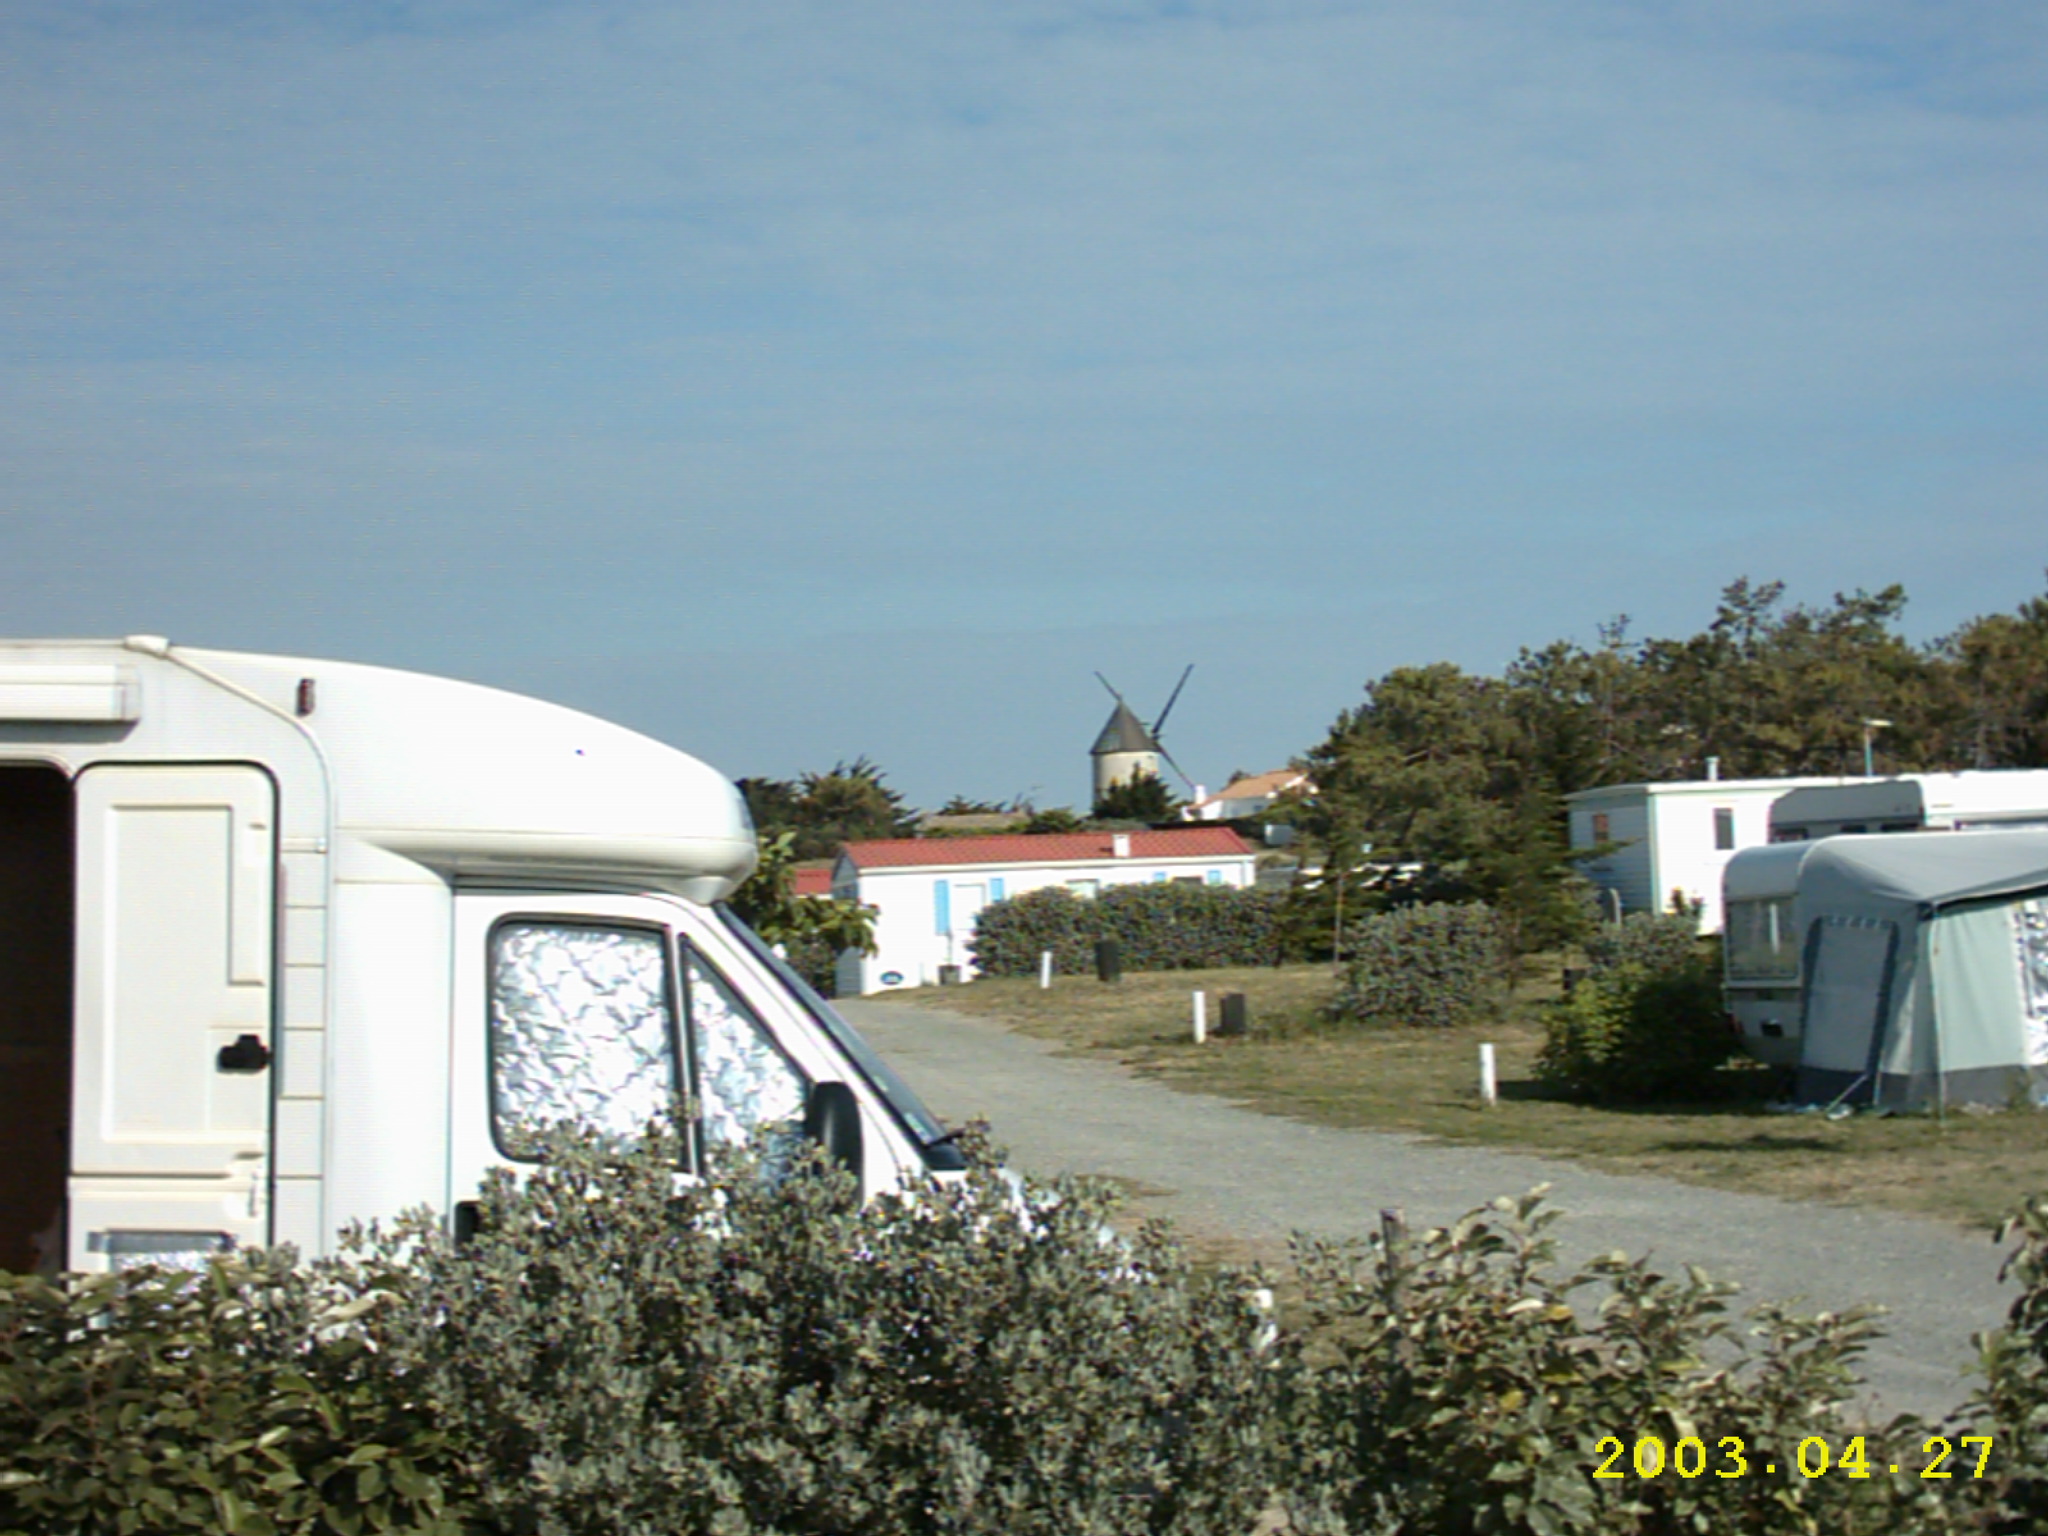 Camping de la Sourderie( Noirmoutier)